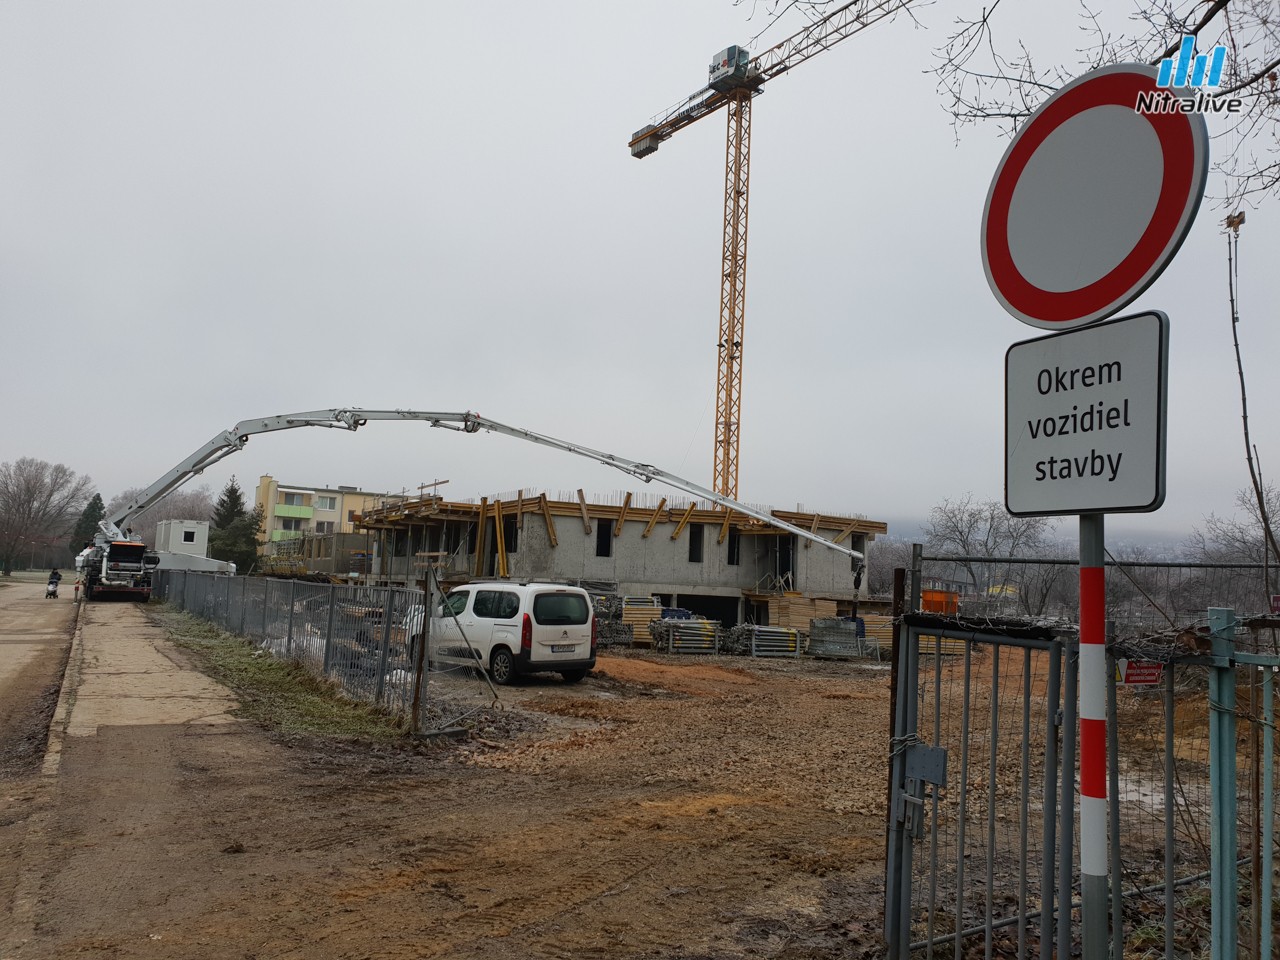 Bytové domy Lomnická ulica, Chrenová Nitra výstavba 2018/2019